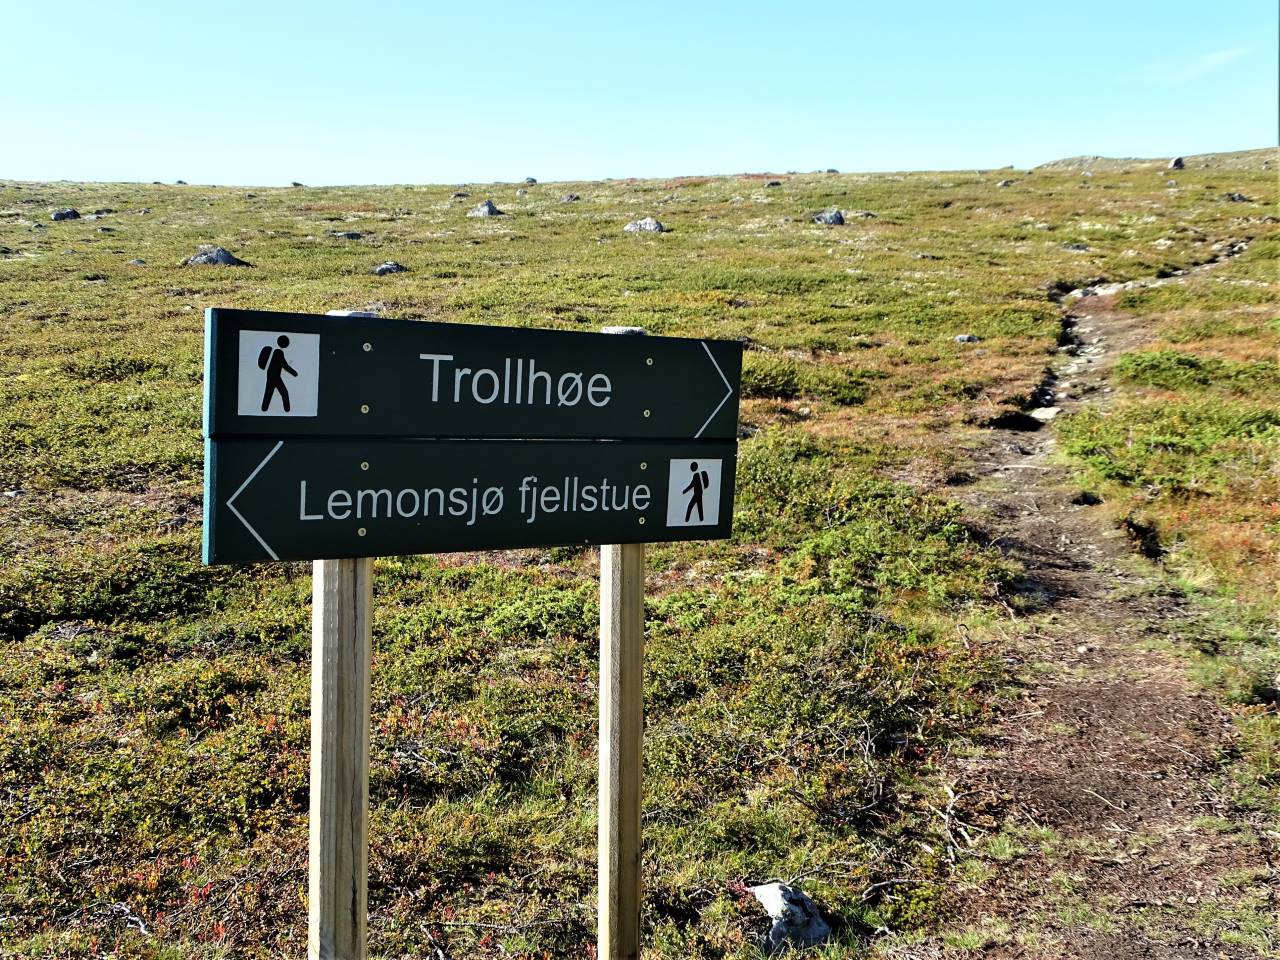 Trollhøe